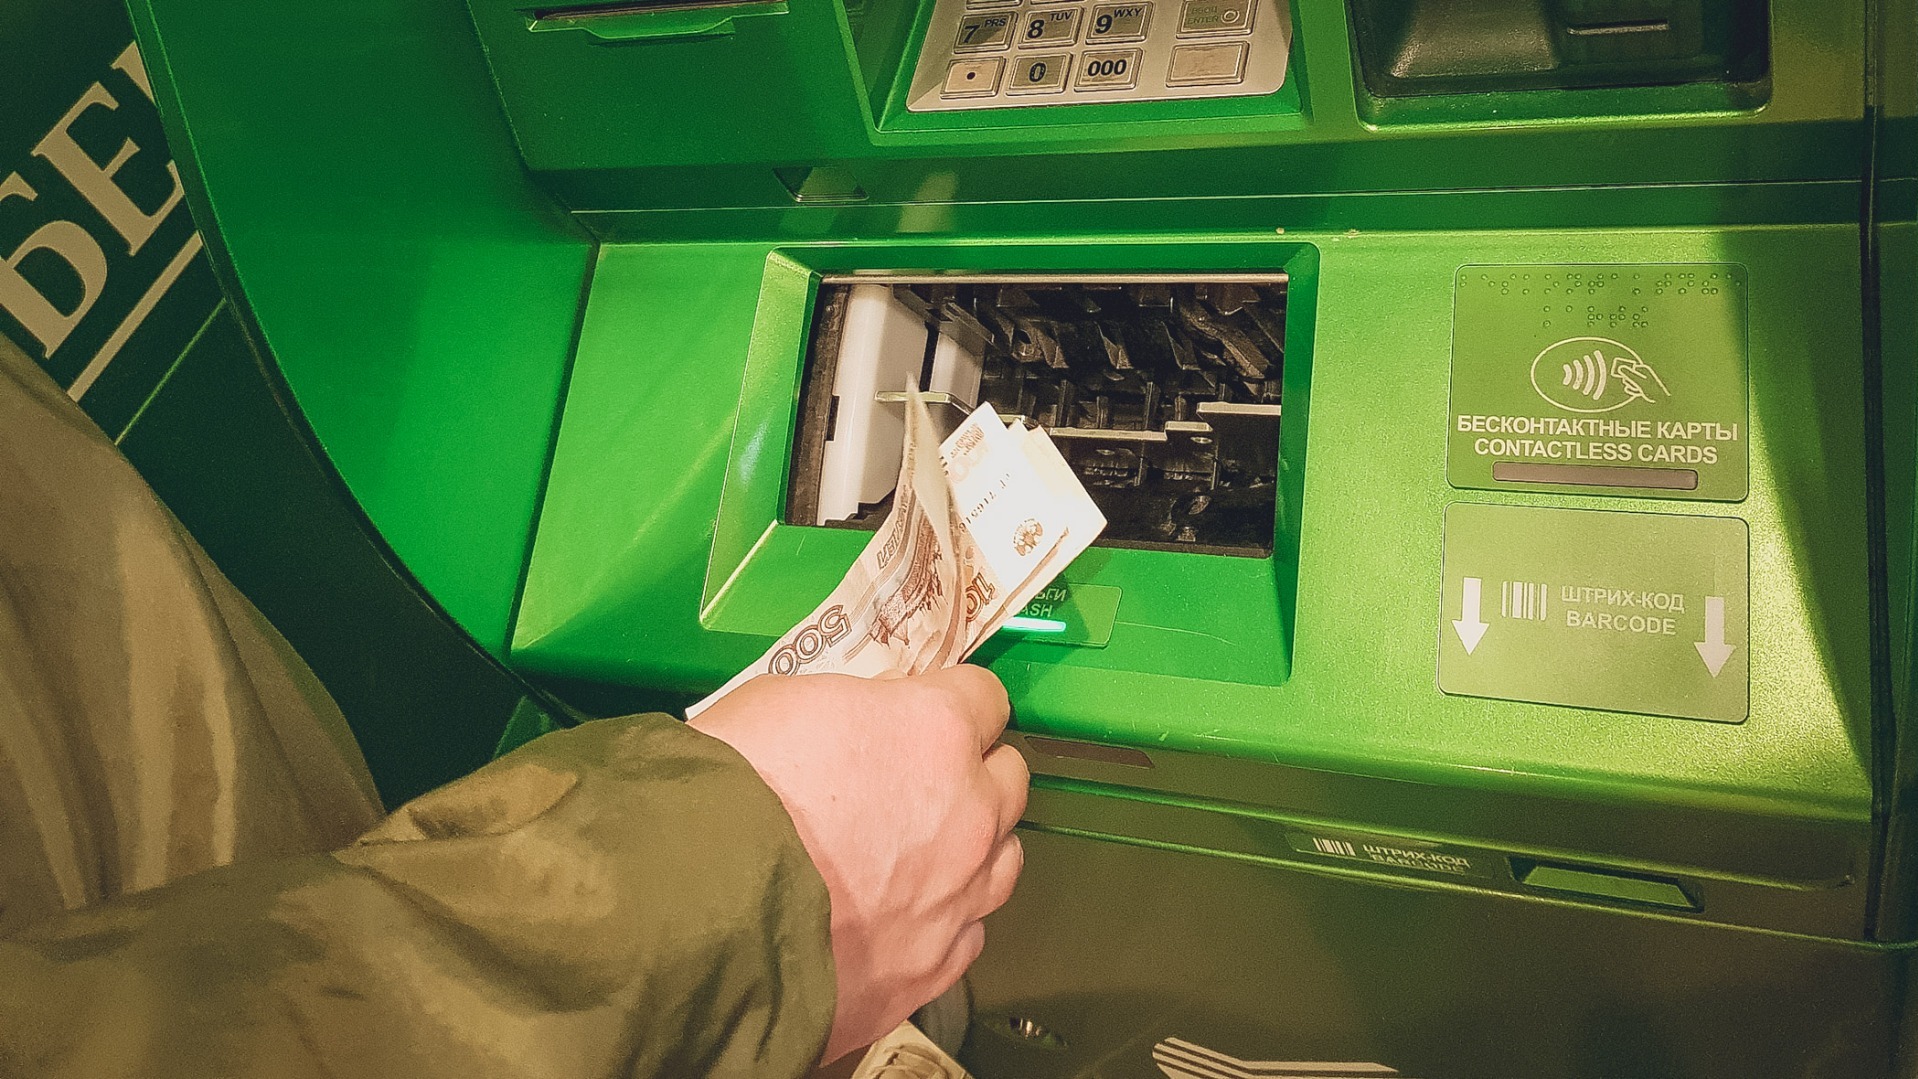 ОПГ в Приморье грабила банкоматы